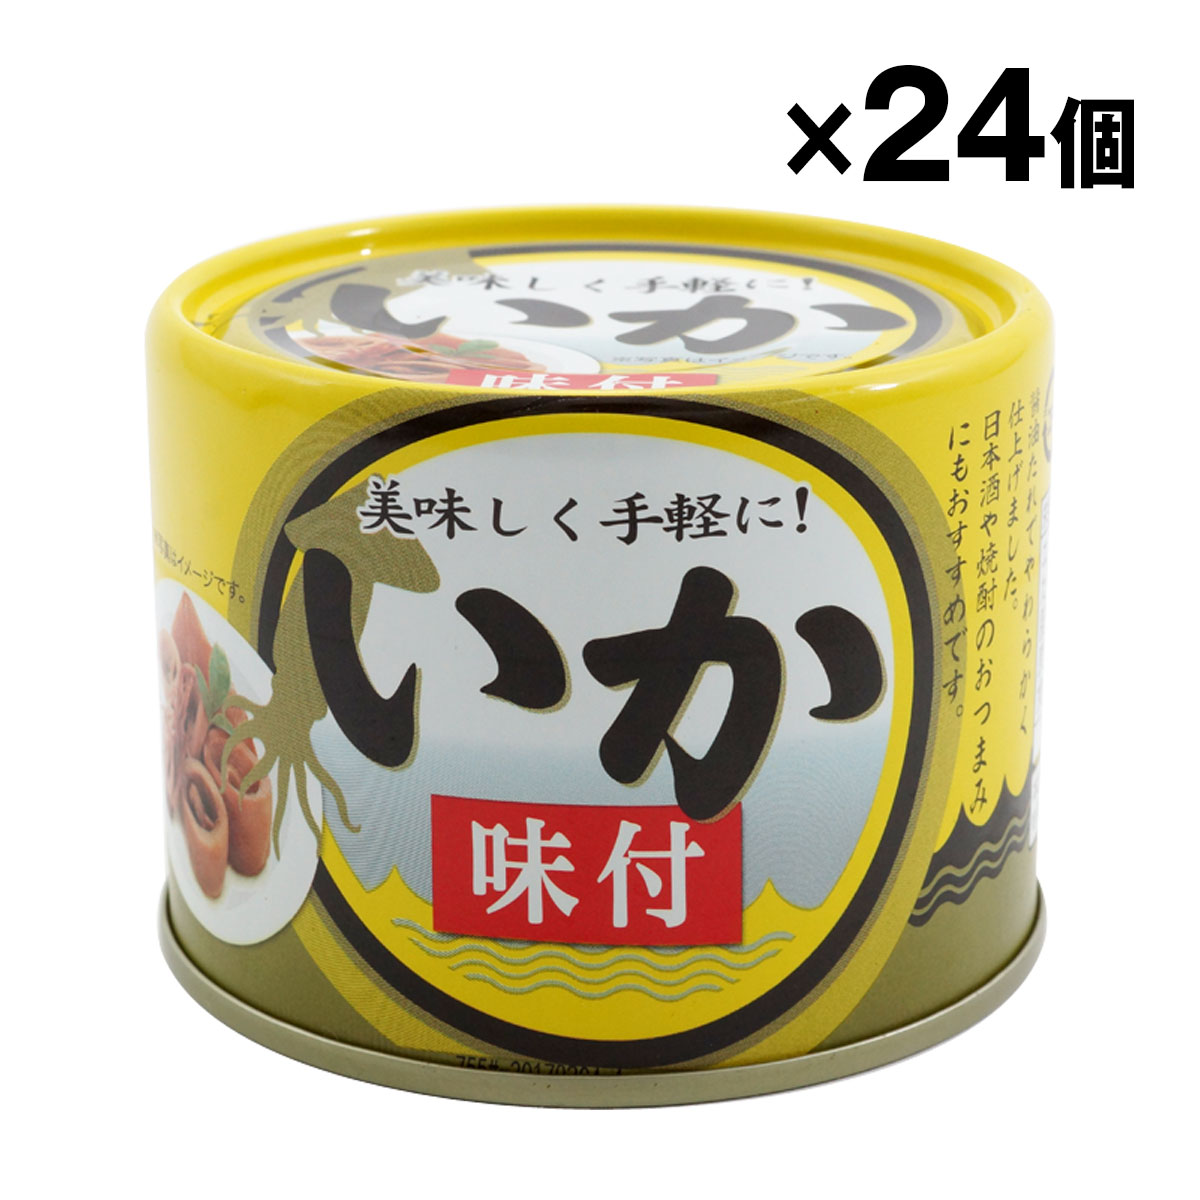 シーウィングス いか味付 190g×24缶 缶詰の商品画像